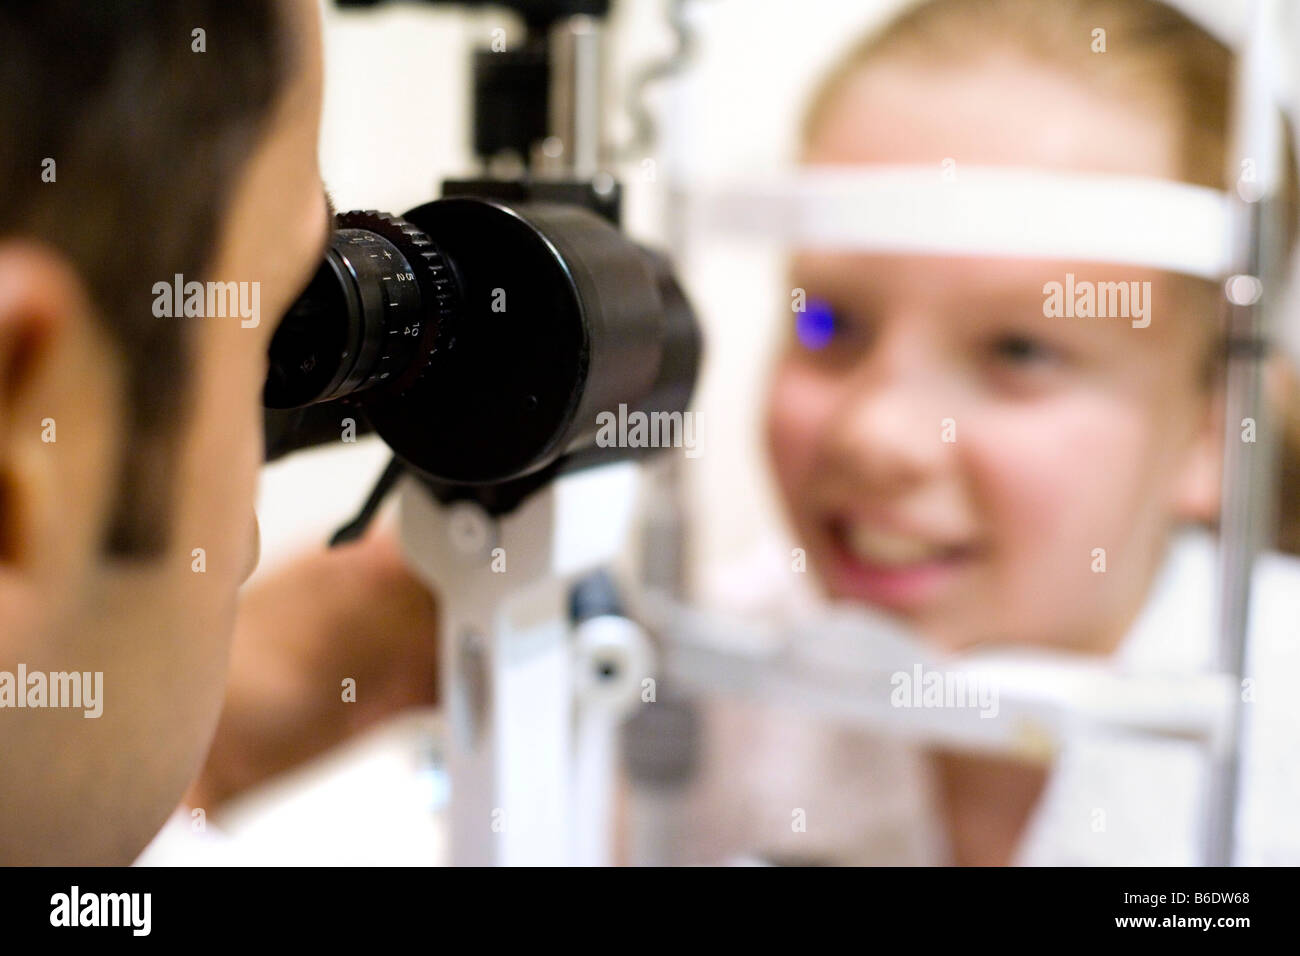 Augenuntersuchung. Optiker mit einer Spaltlampe, um ein zehnjähriges Mädchen Augen zu untersuchen. Dieses Instrument scheint einen feinen Lichtstrahl. Stockfoto